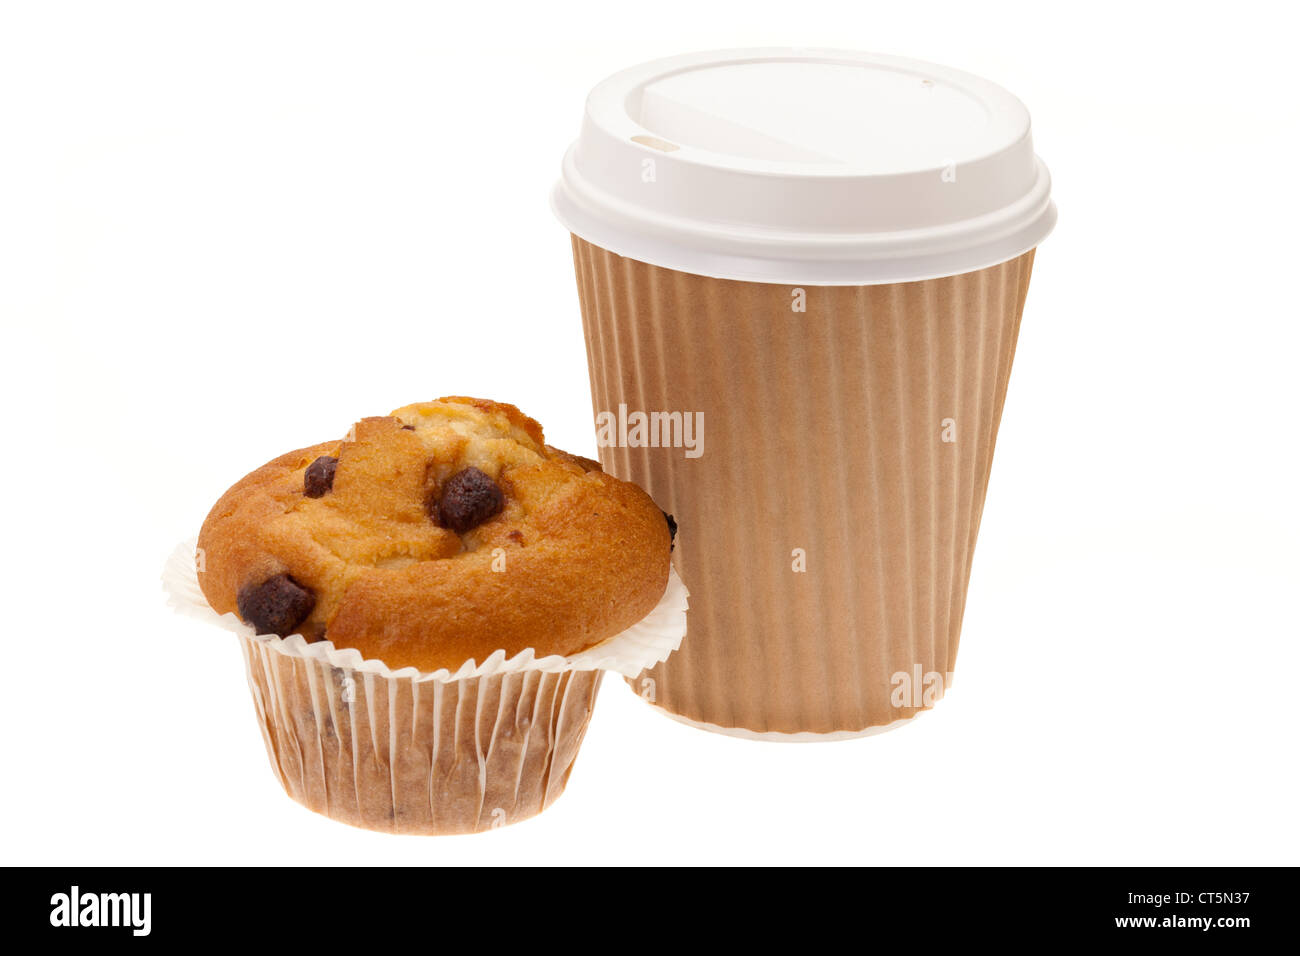 Ein Herausnehmen der Frühstück bestehend aus chocolate Chip Muffins und Kaffee in einer Einweg-Tasse - Studio gedreht mit weißem Hintergrund Stockfoto